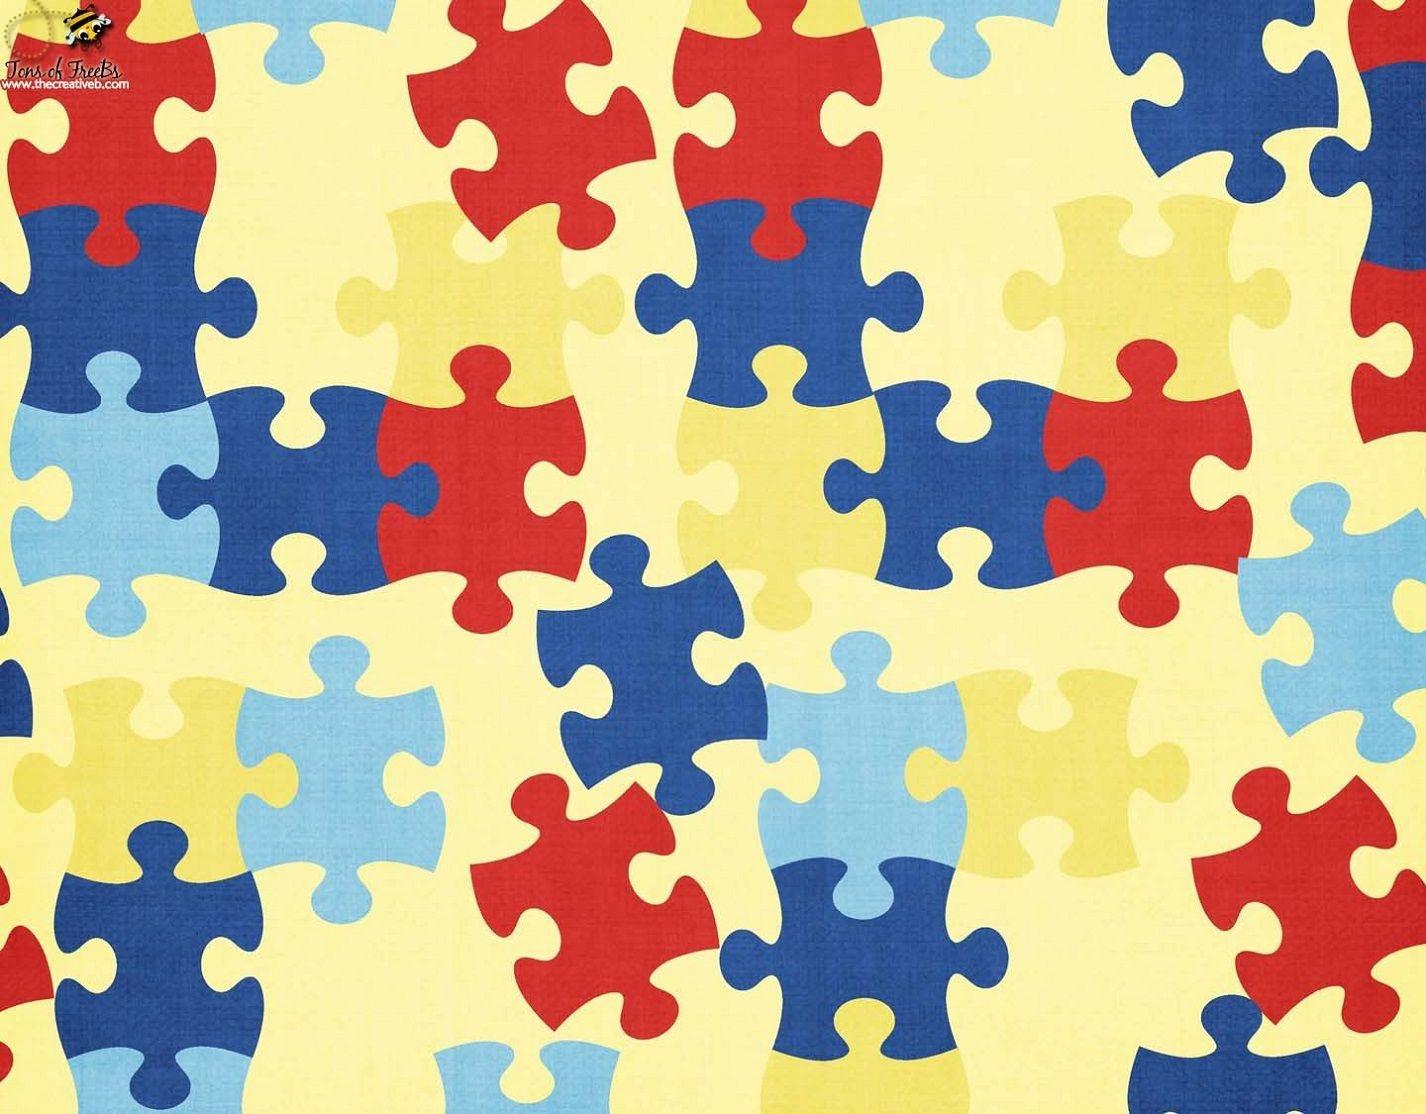 Autism Wallpaper, HDQ Autism Image Collection for Desktop, VV.254